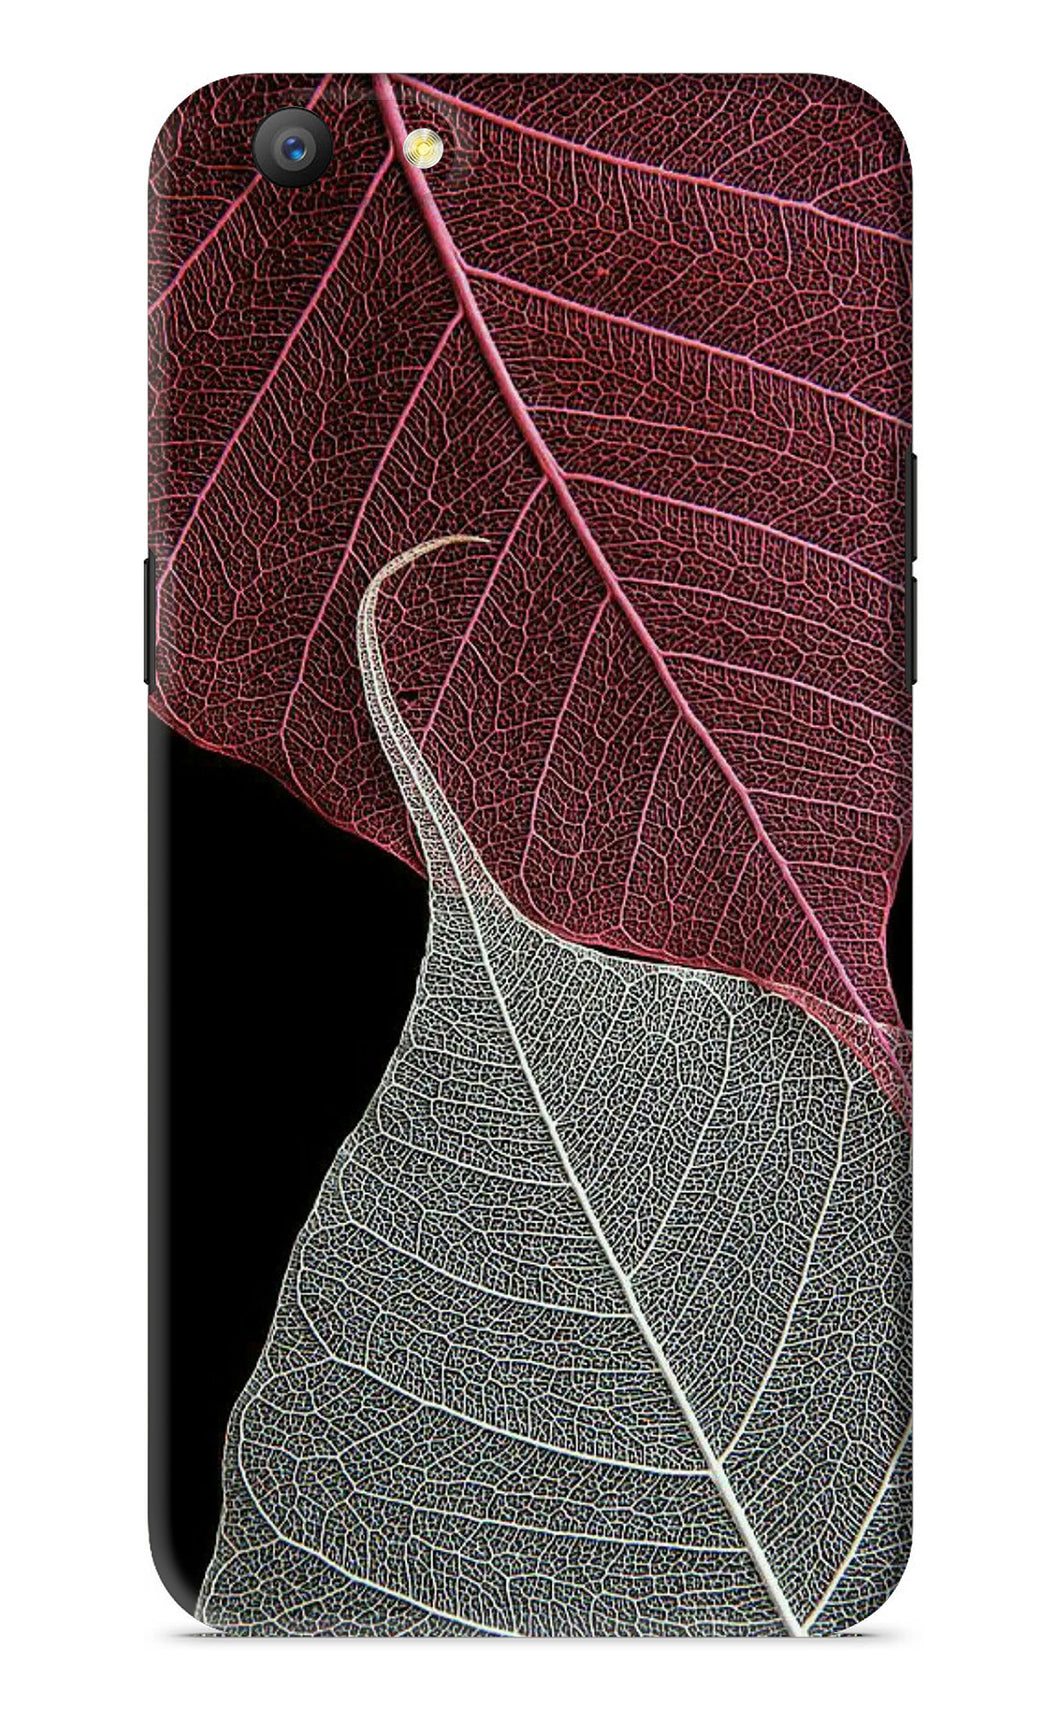 Leaf Pattern Oppo A57 Back Skin Wrap